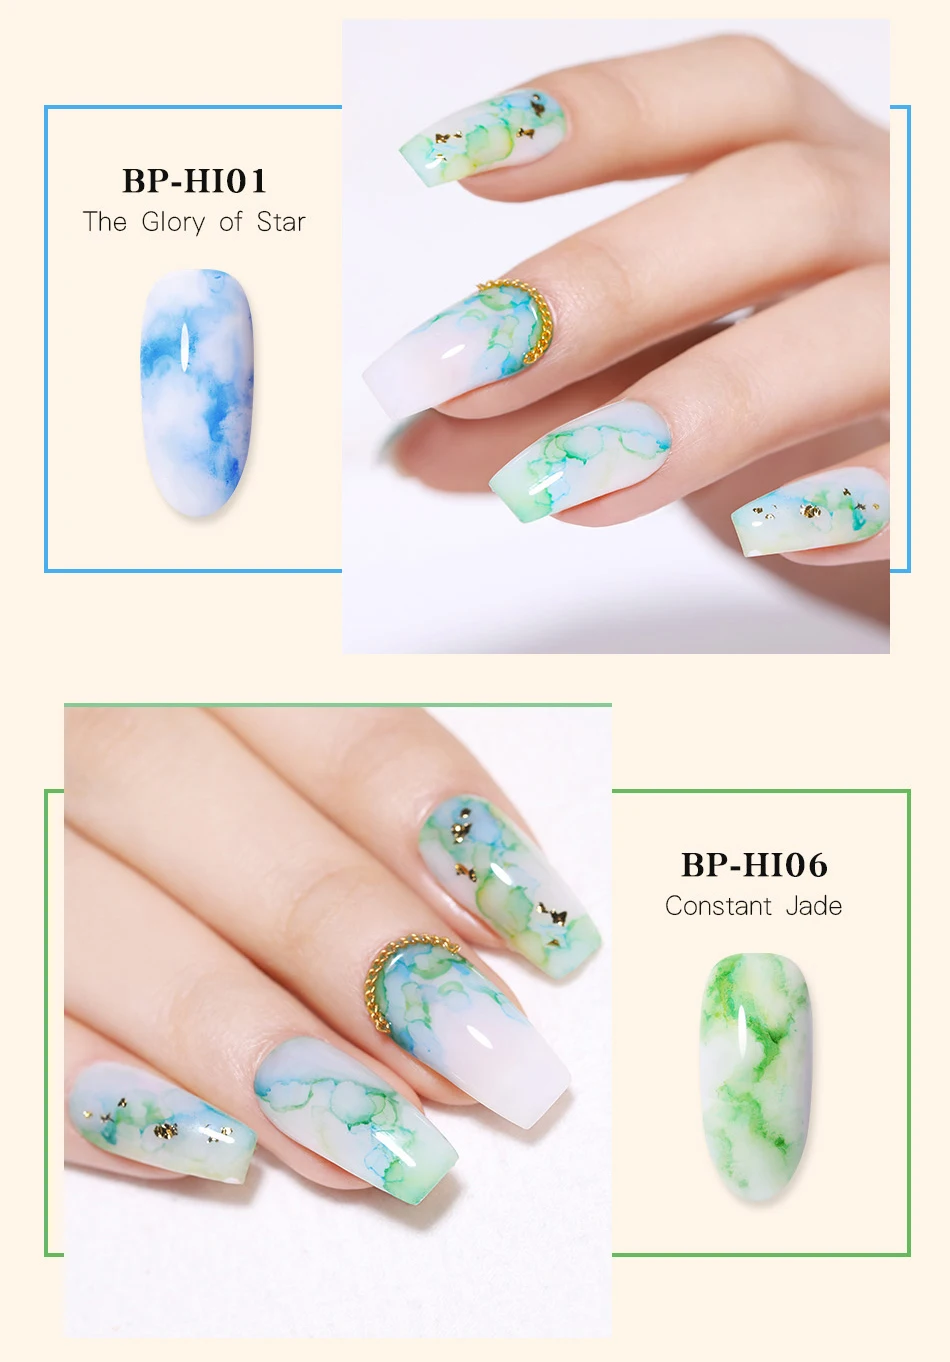 От BORN PRETTY-цветок лак для ногтей 6 мл разноцветные, для ногтей арт-дизайн цветок маникюрный лак салон Красота для дизайна ногтей